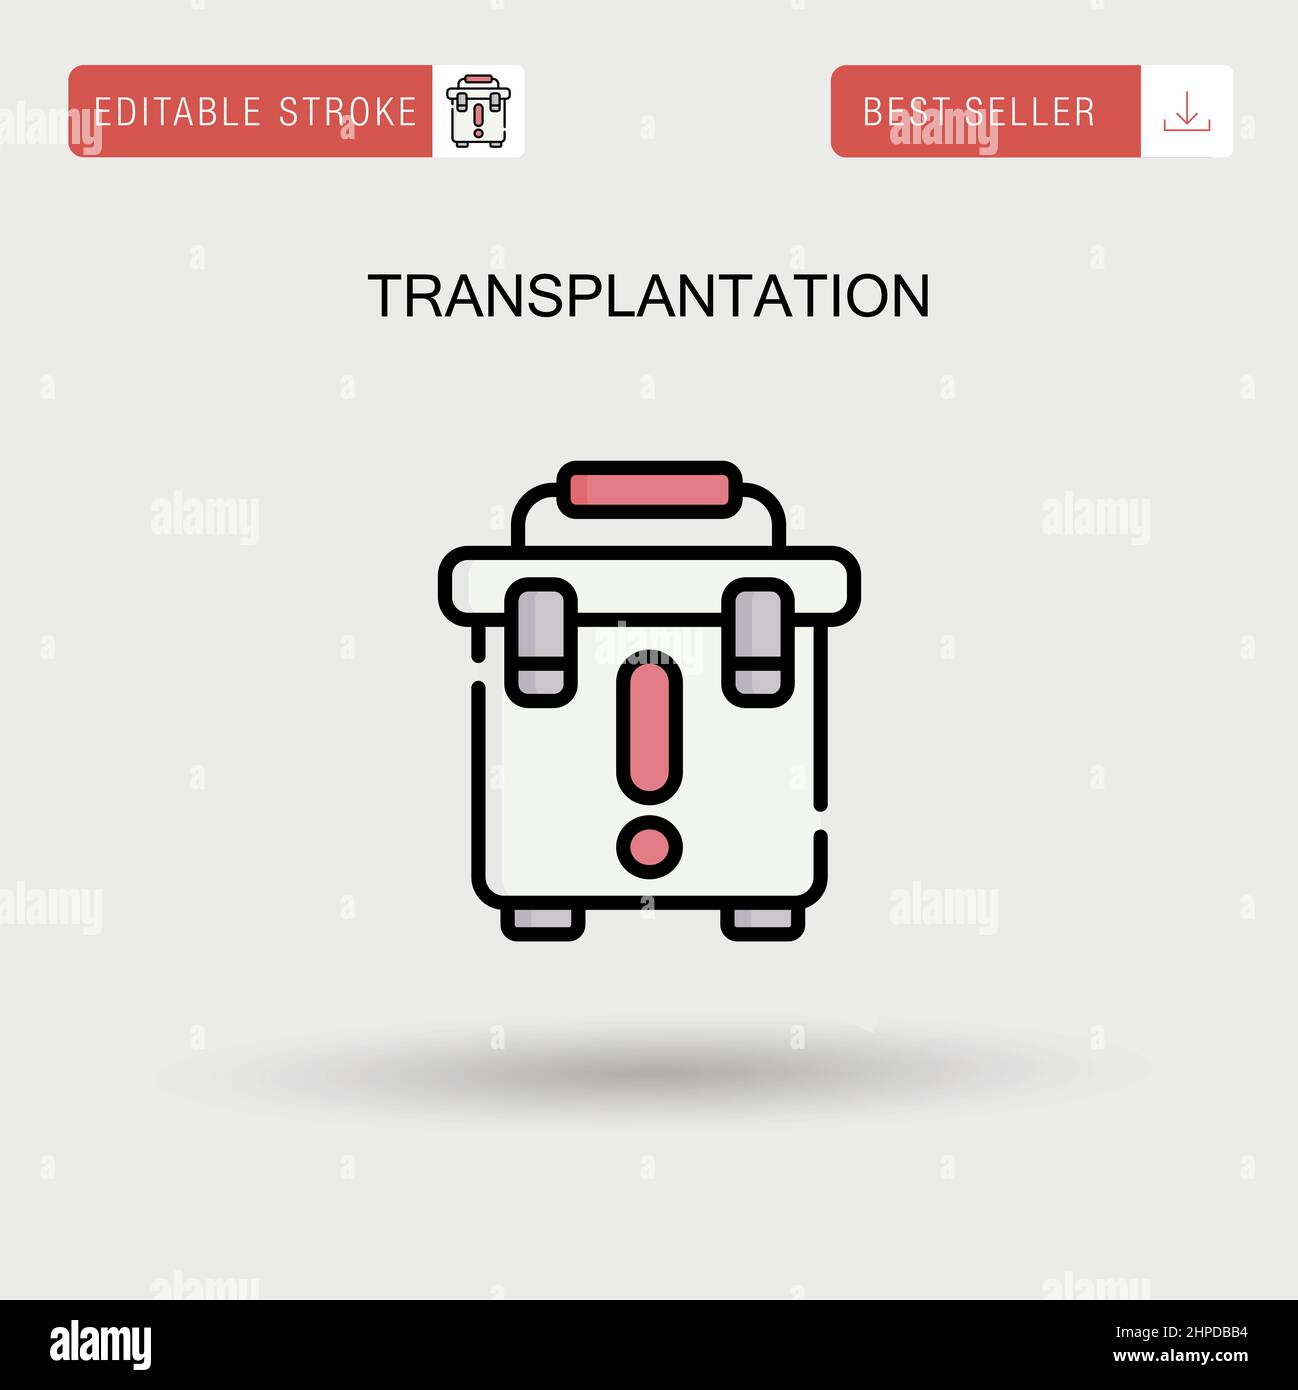 Transplantation Simple vector icon. Stock Vector